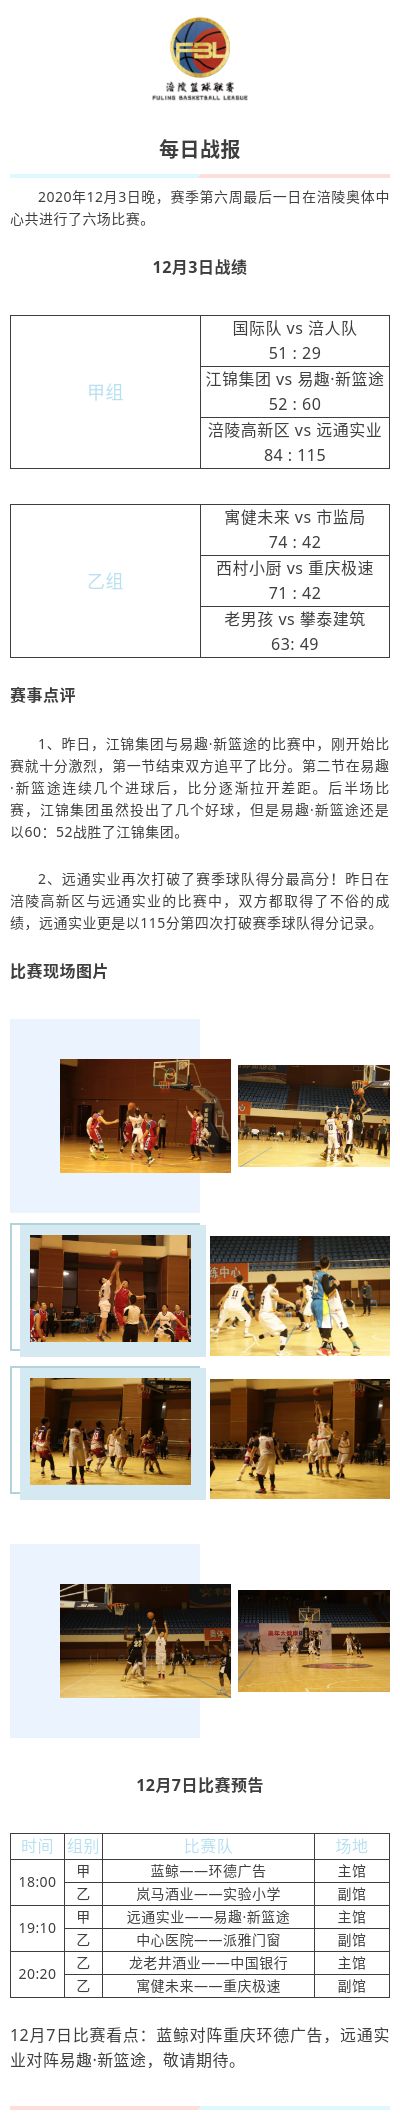 涪陵高新区·涪陵篮球联赛（FBL）2020赛季每日战报12.3